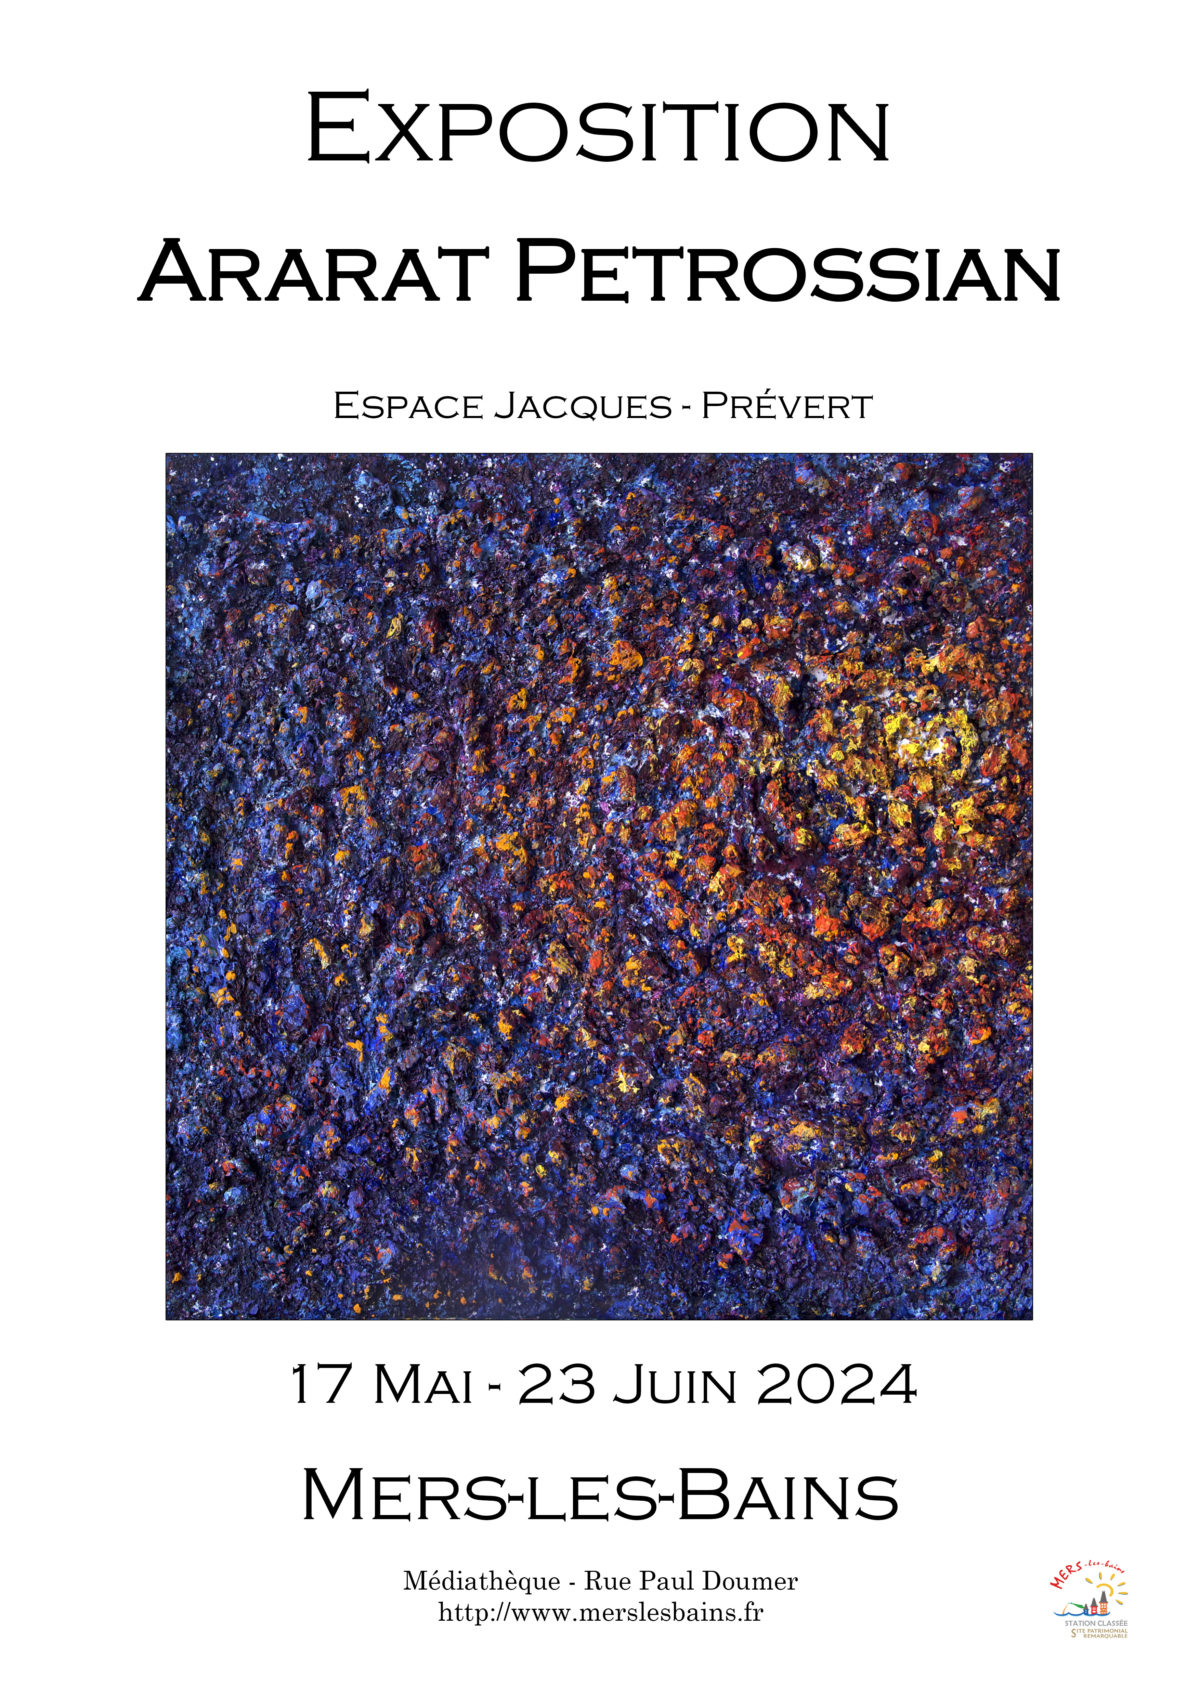 Exposition Ararat Petrossian Espace Jacques Prevert à Mers les Bains